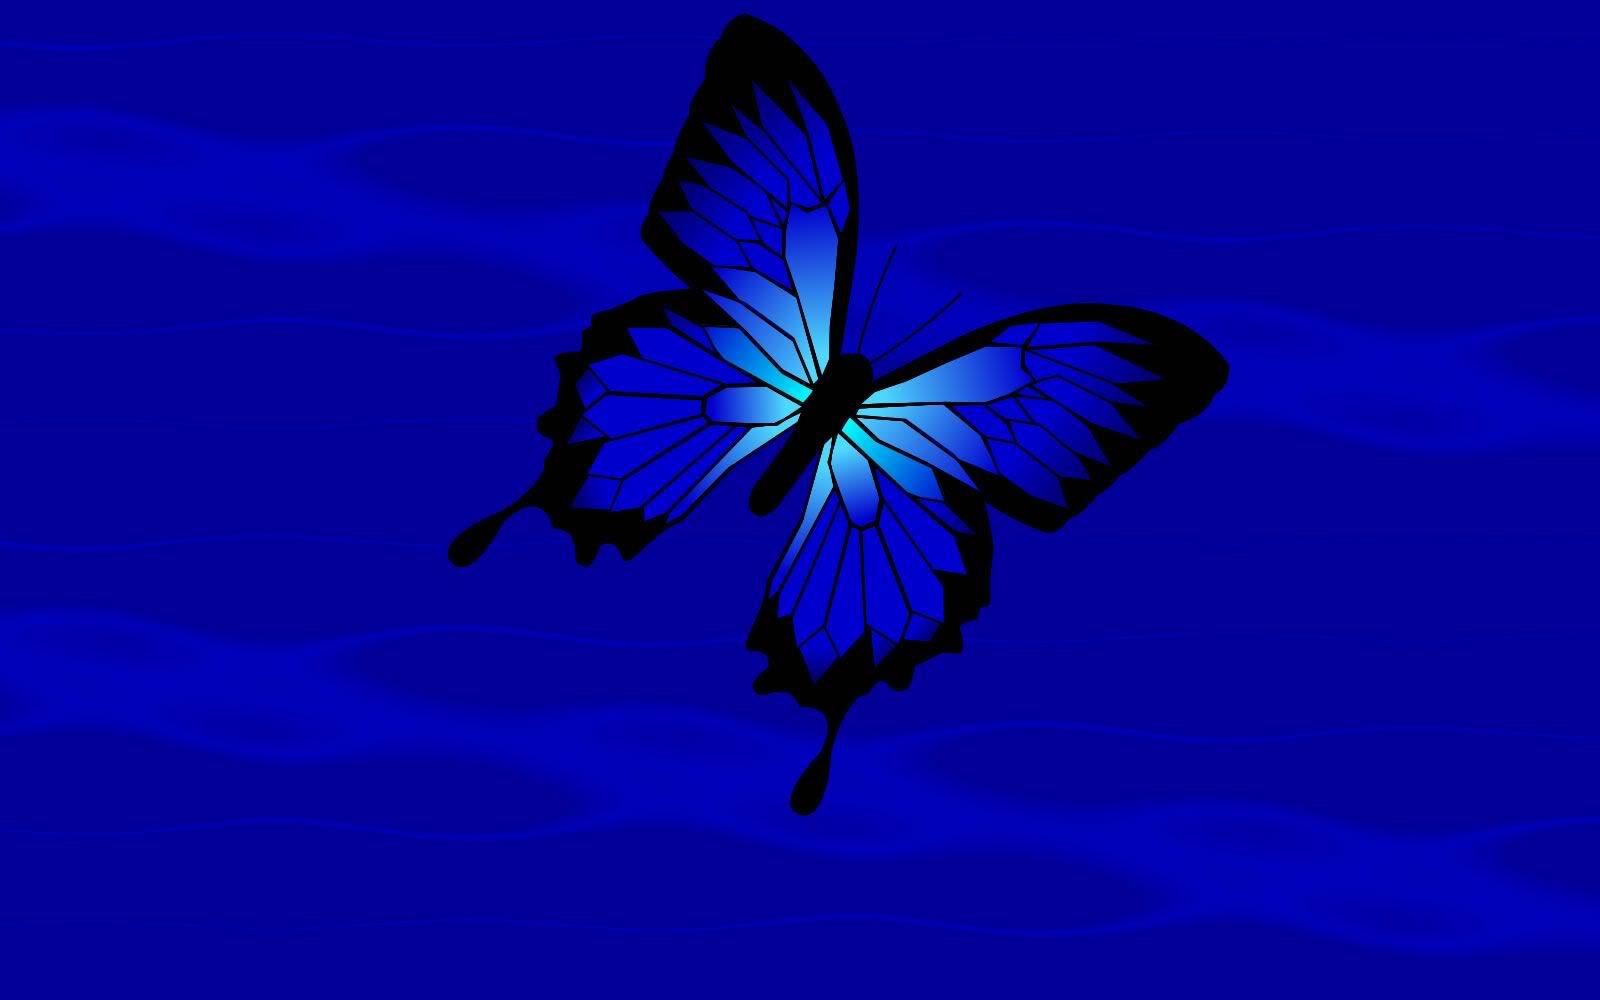 Blue Butterfly HD Wallpapers - Top Free Blue Butterfly HD ...